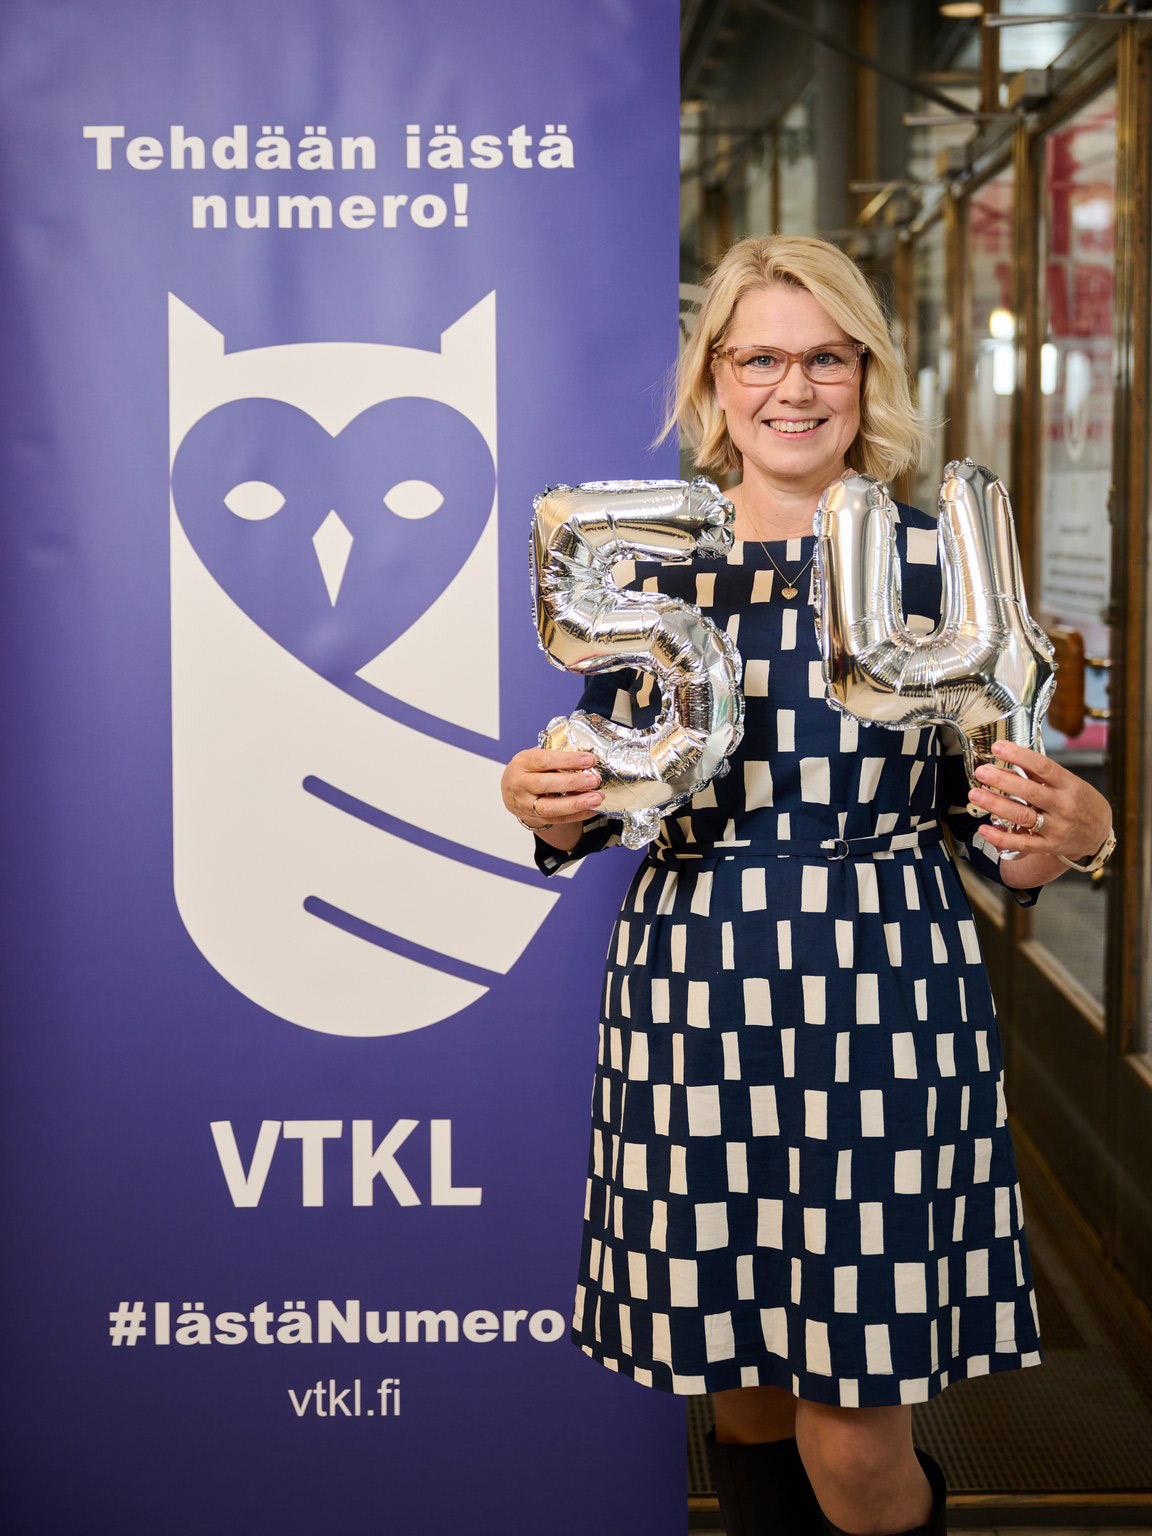 Tehdään iästä numero banneri. Kuvassa Eva Korkiämäki näyttää ikänsä ilmapalloilla. 54 vuotta.